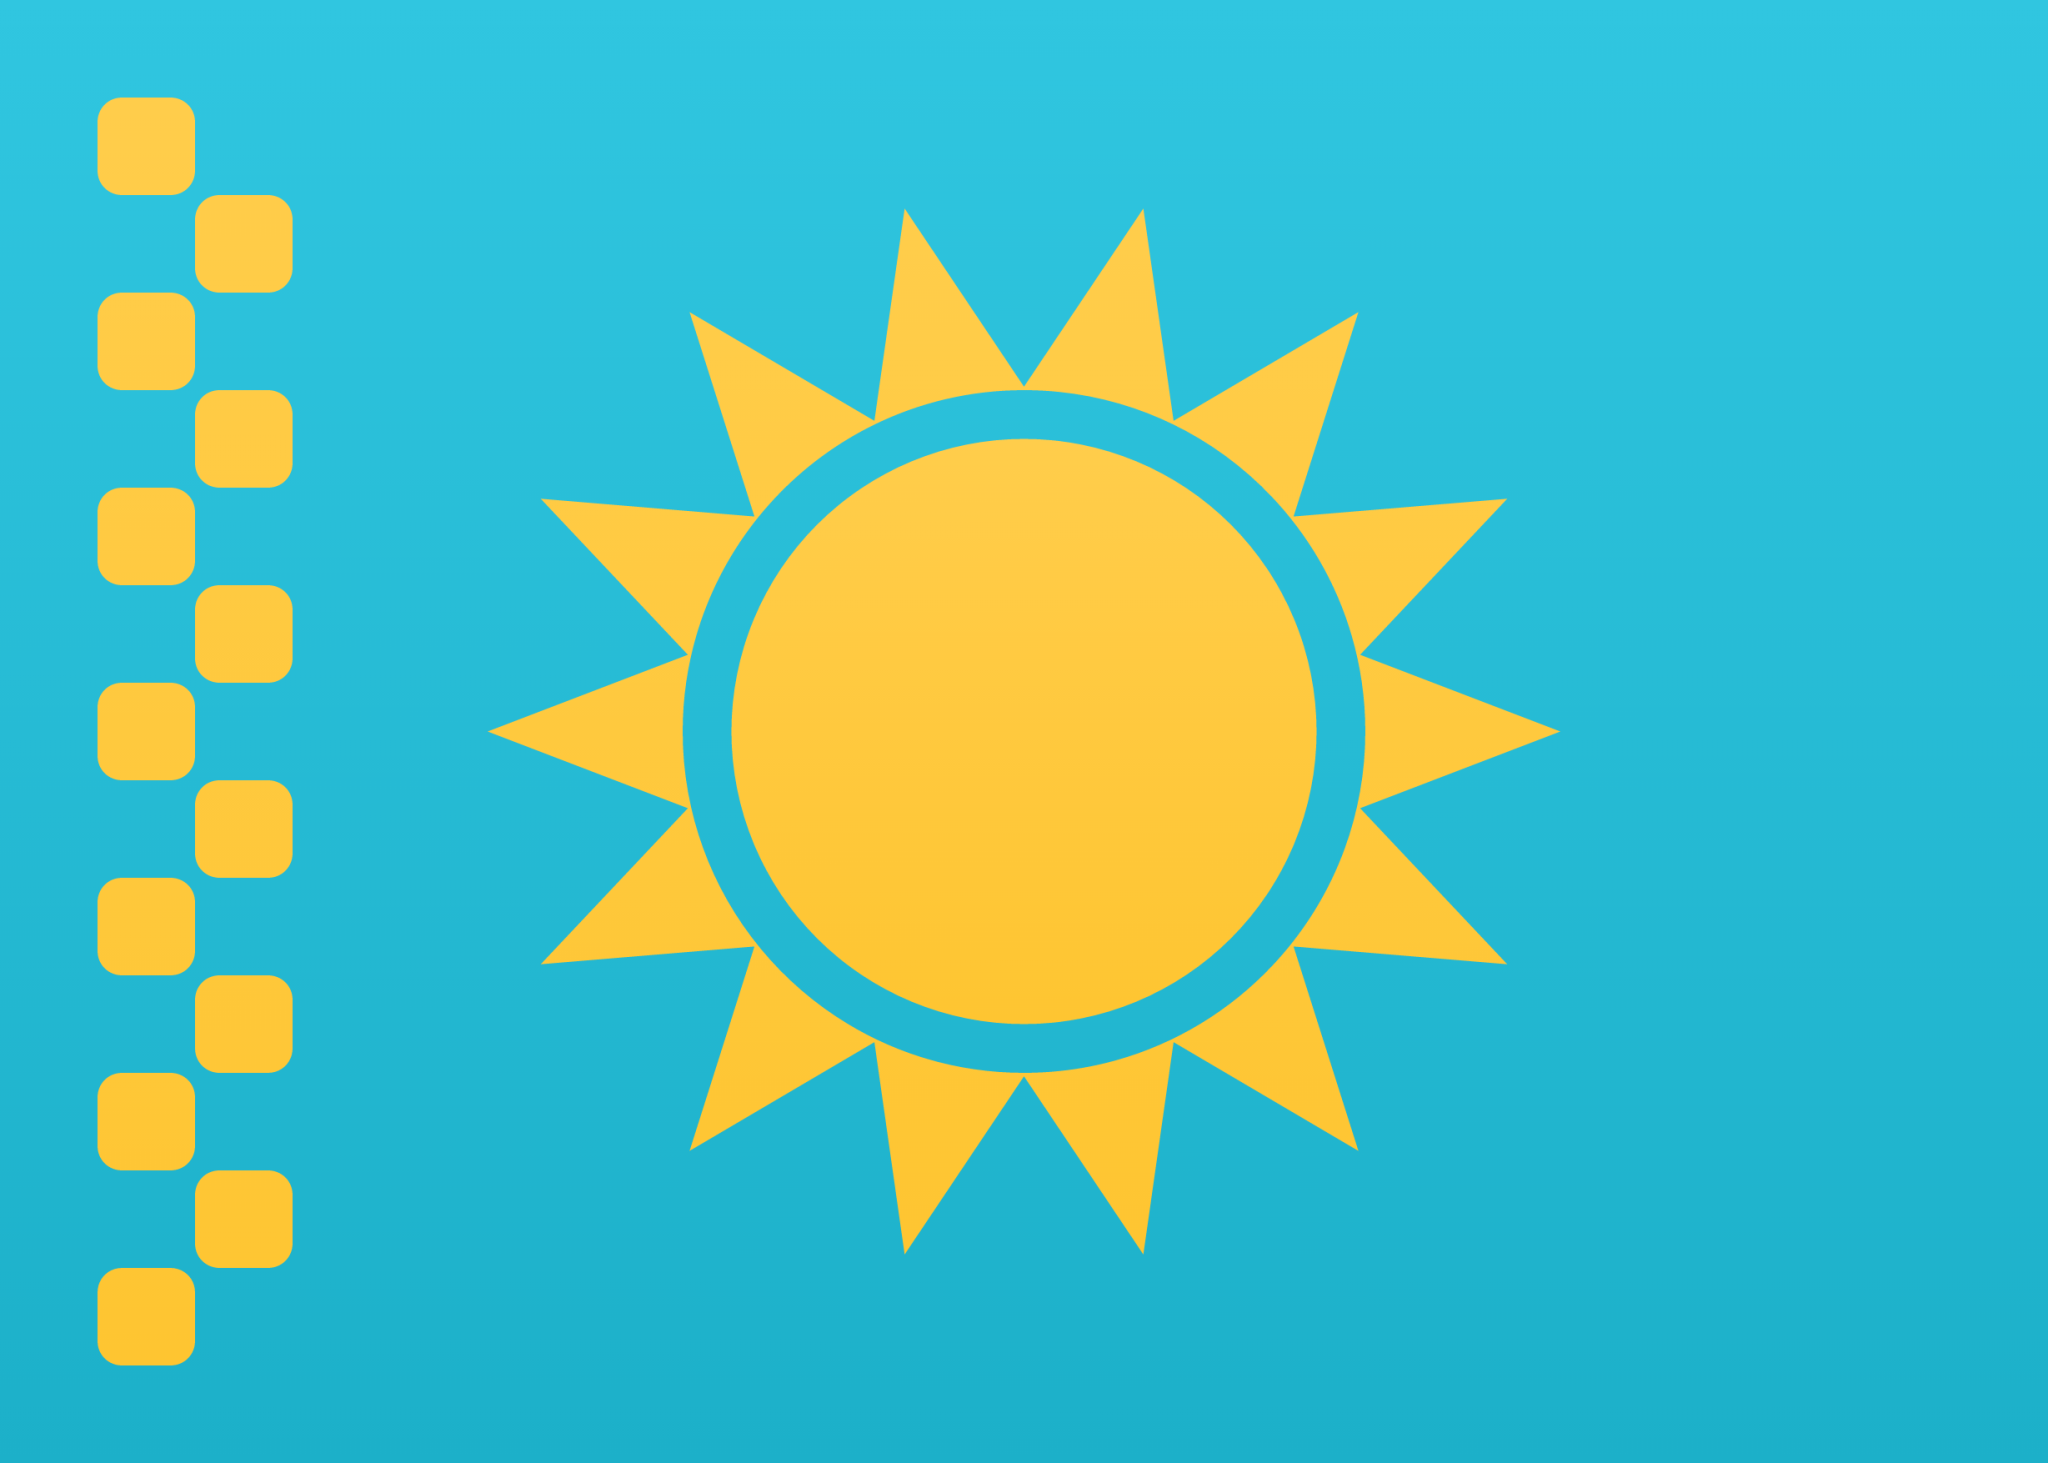 Kazakhstan icon